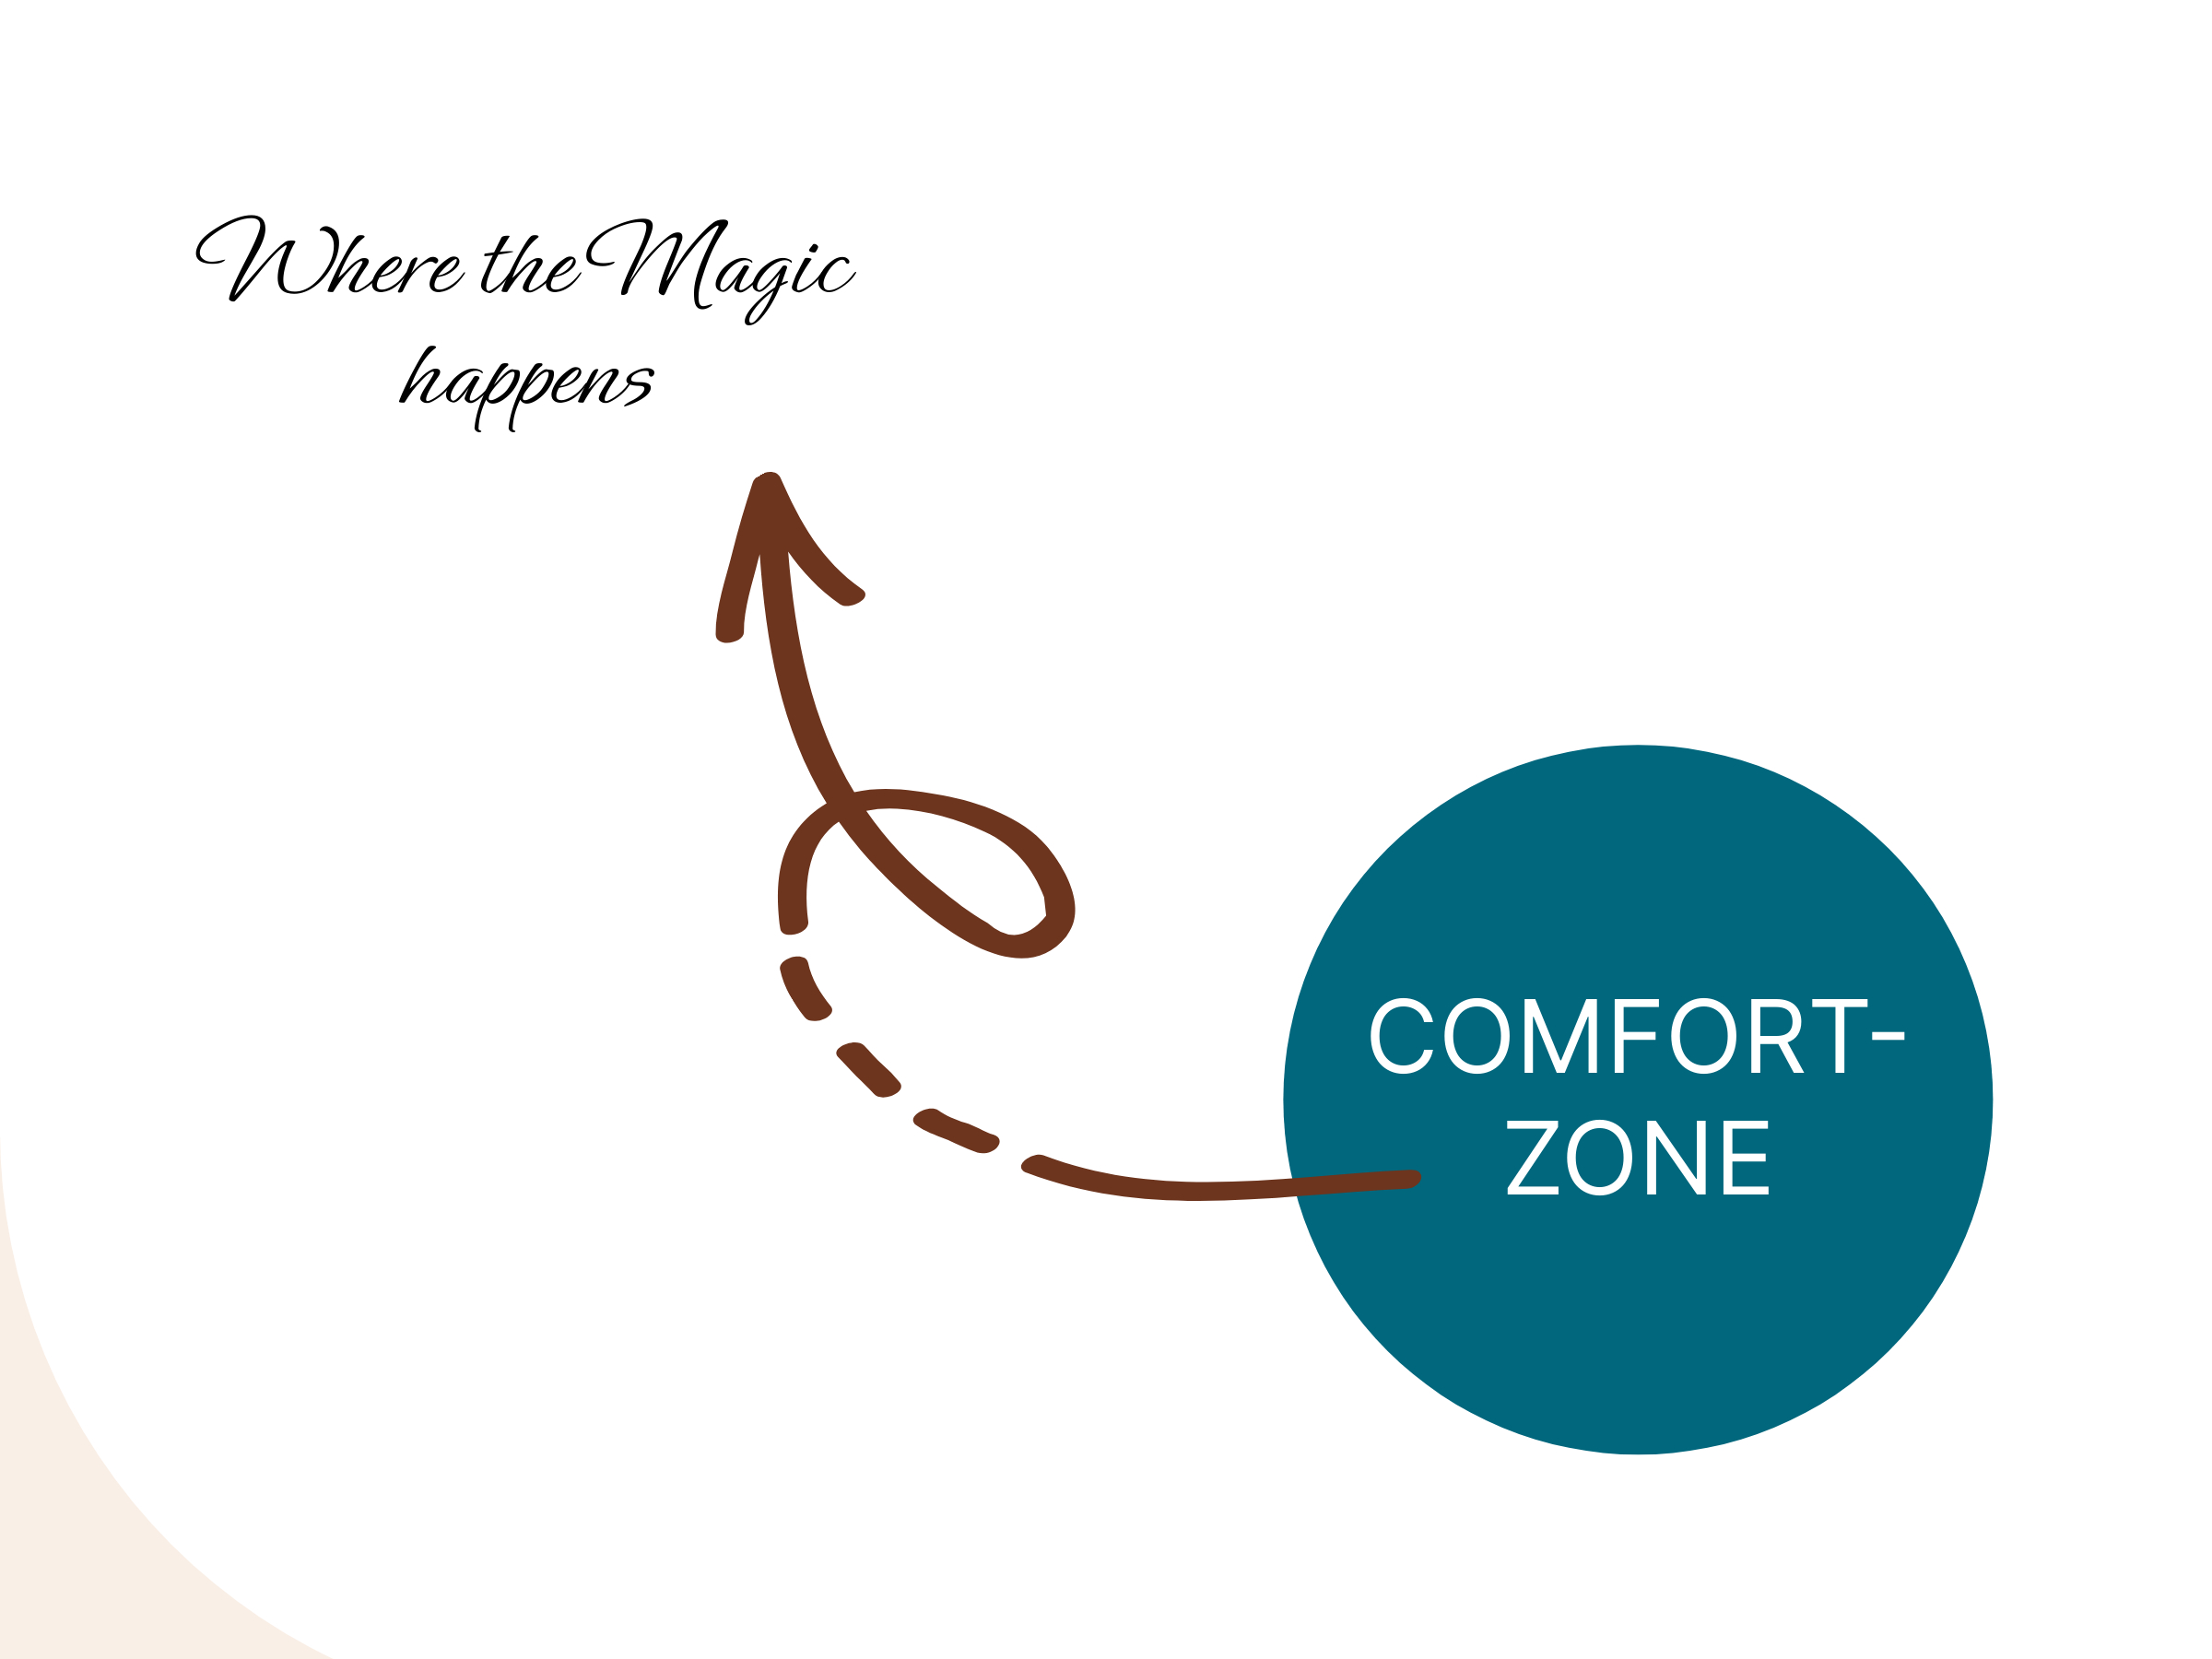 Nur Comfort- und Stretch-Zone sind im Bild